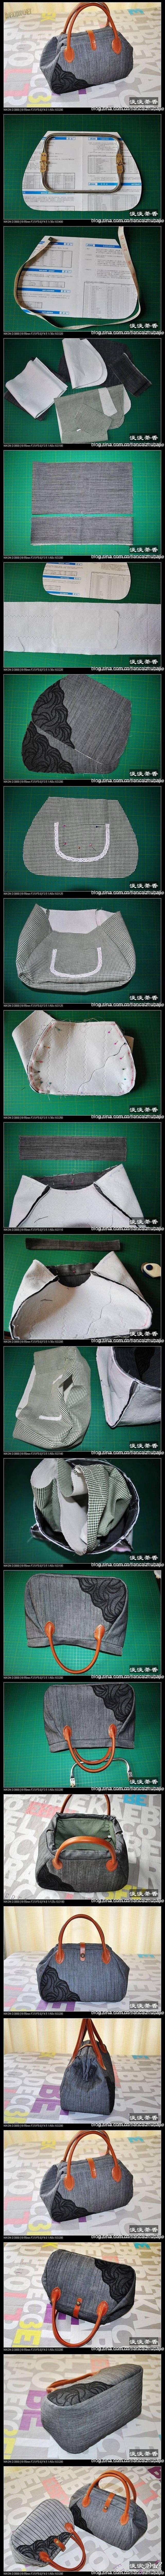 طريقة عمل حقيبة يد بالصور Bag with Lace Sewing  كيفية صنع حقيبة يد بطريقة مبسطة